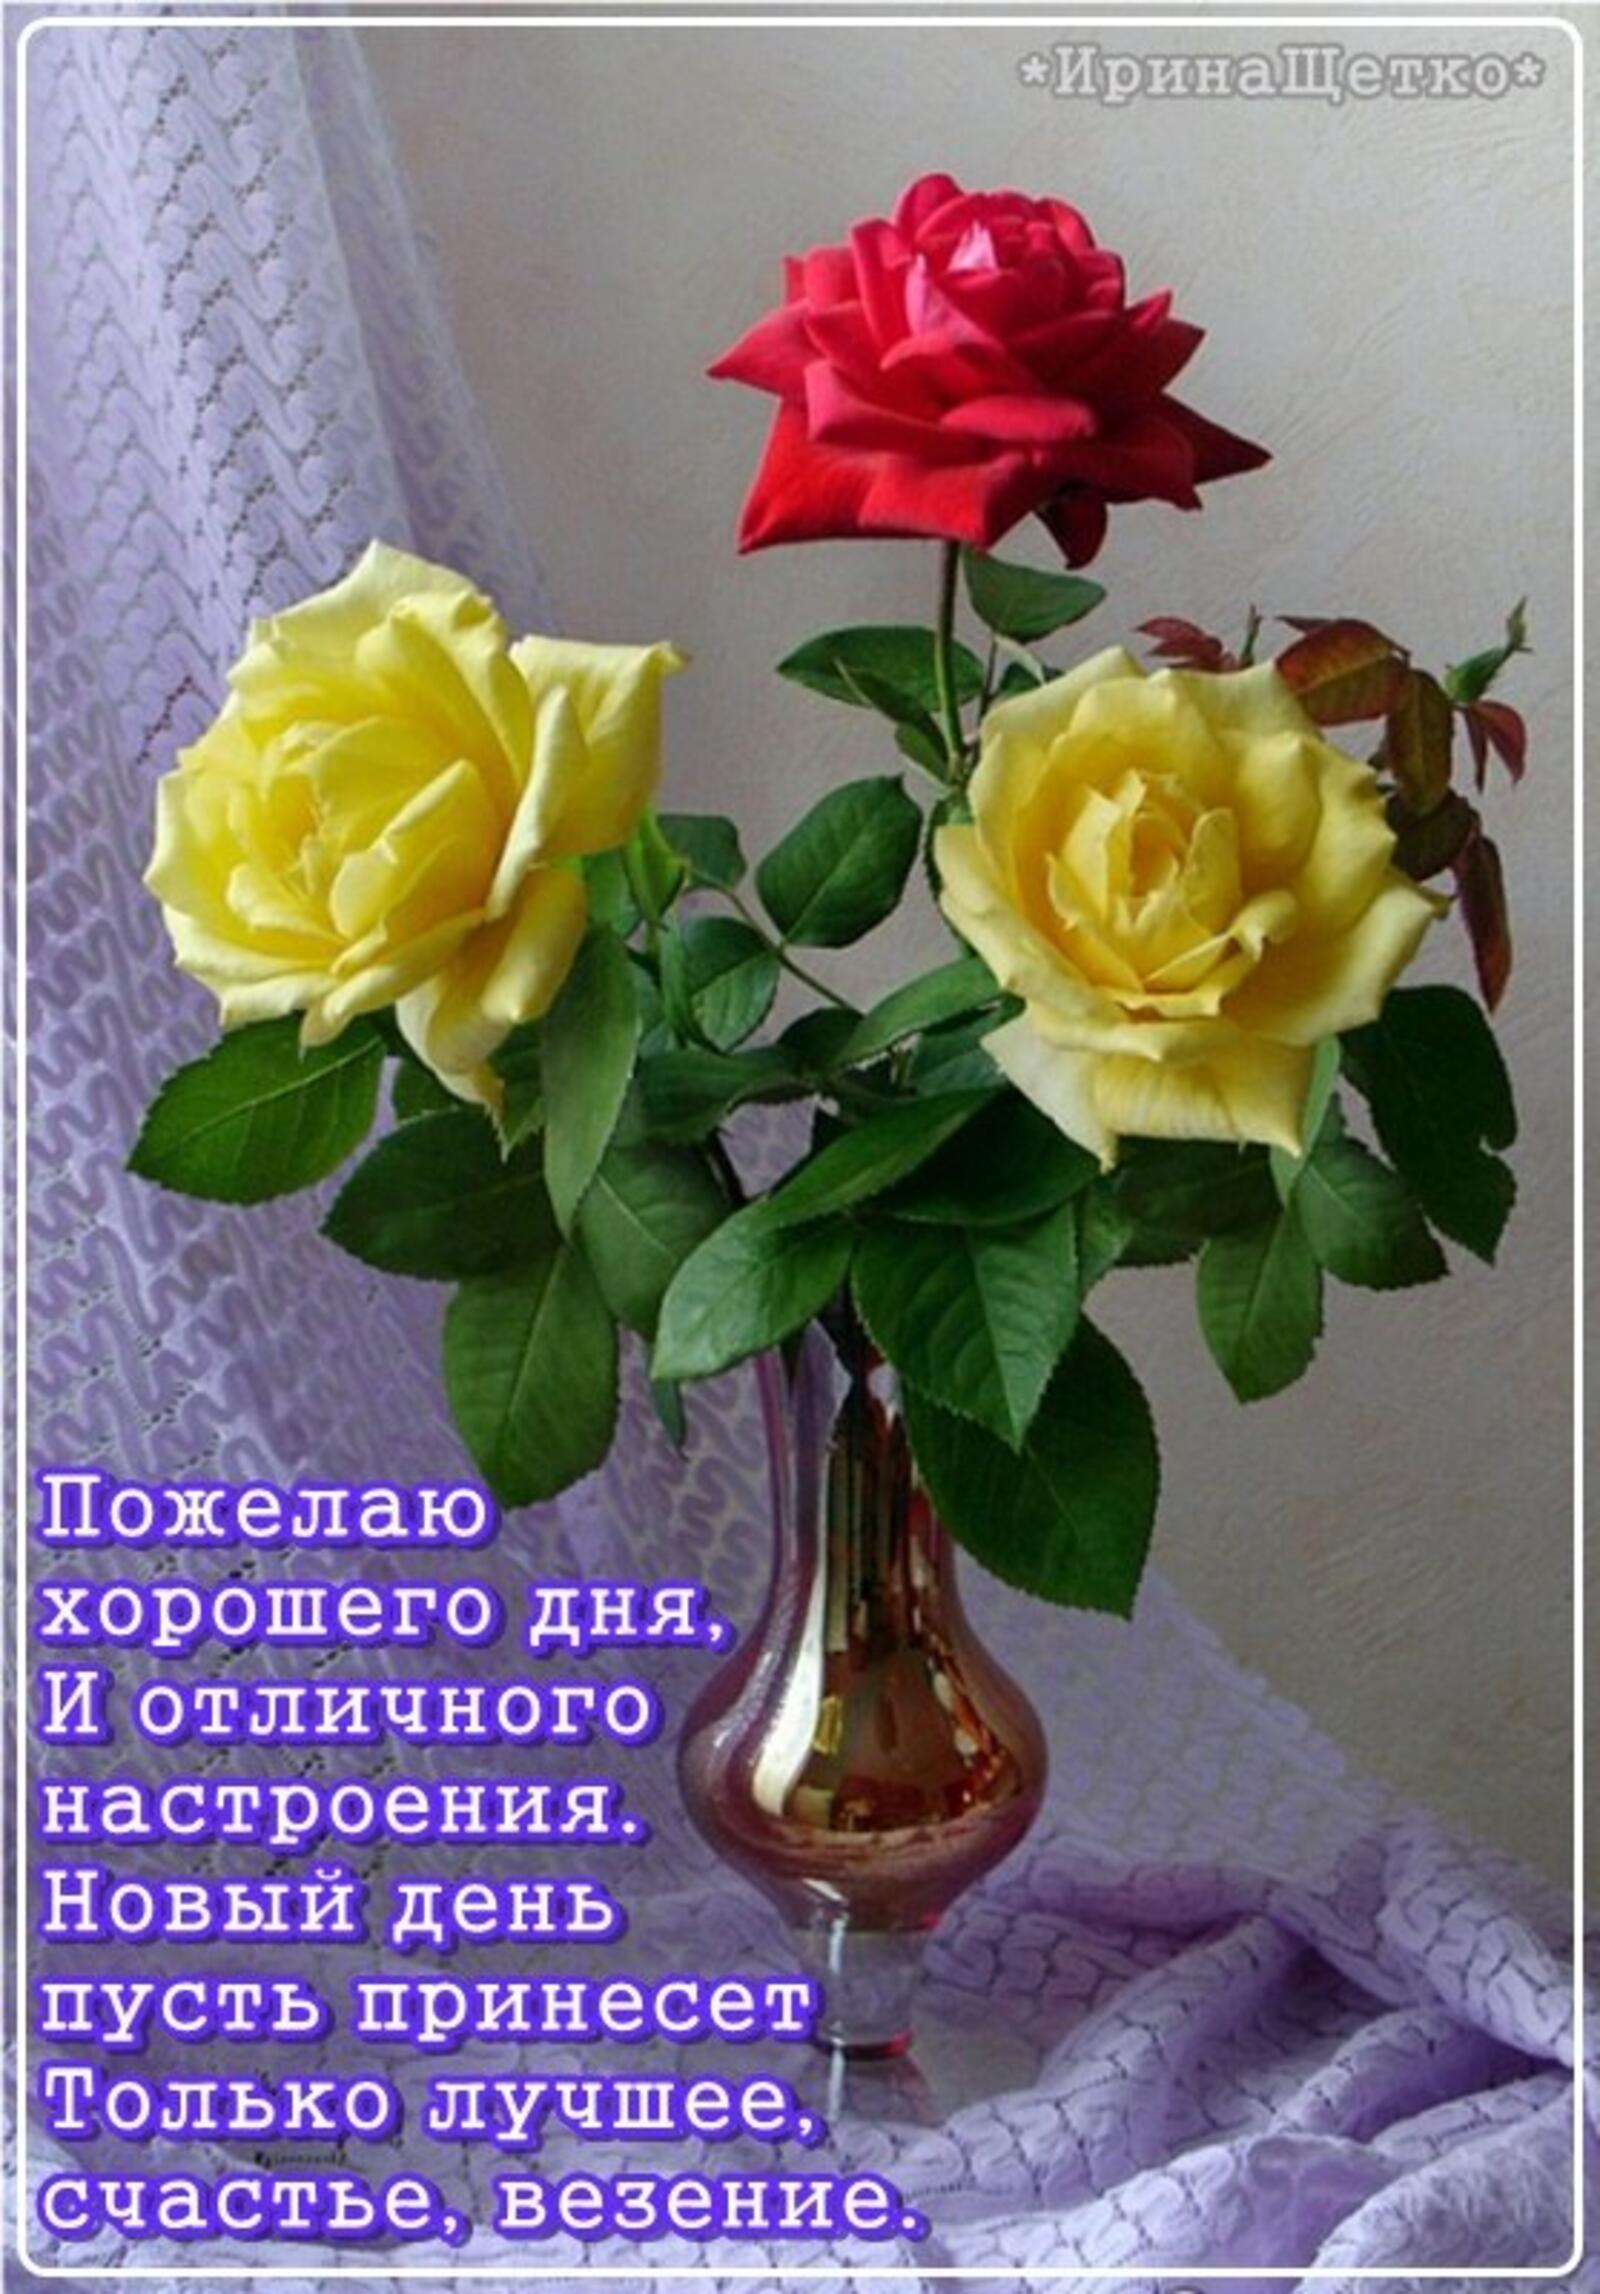 一张以好心情 心情 玫瑰花束为主题的明信片